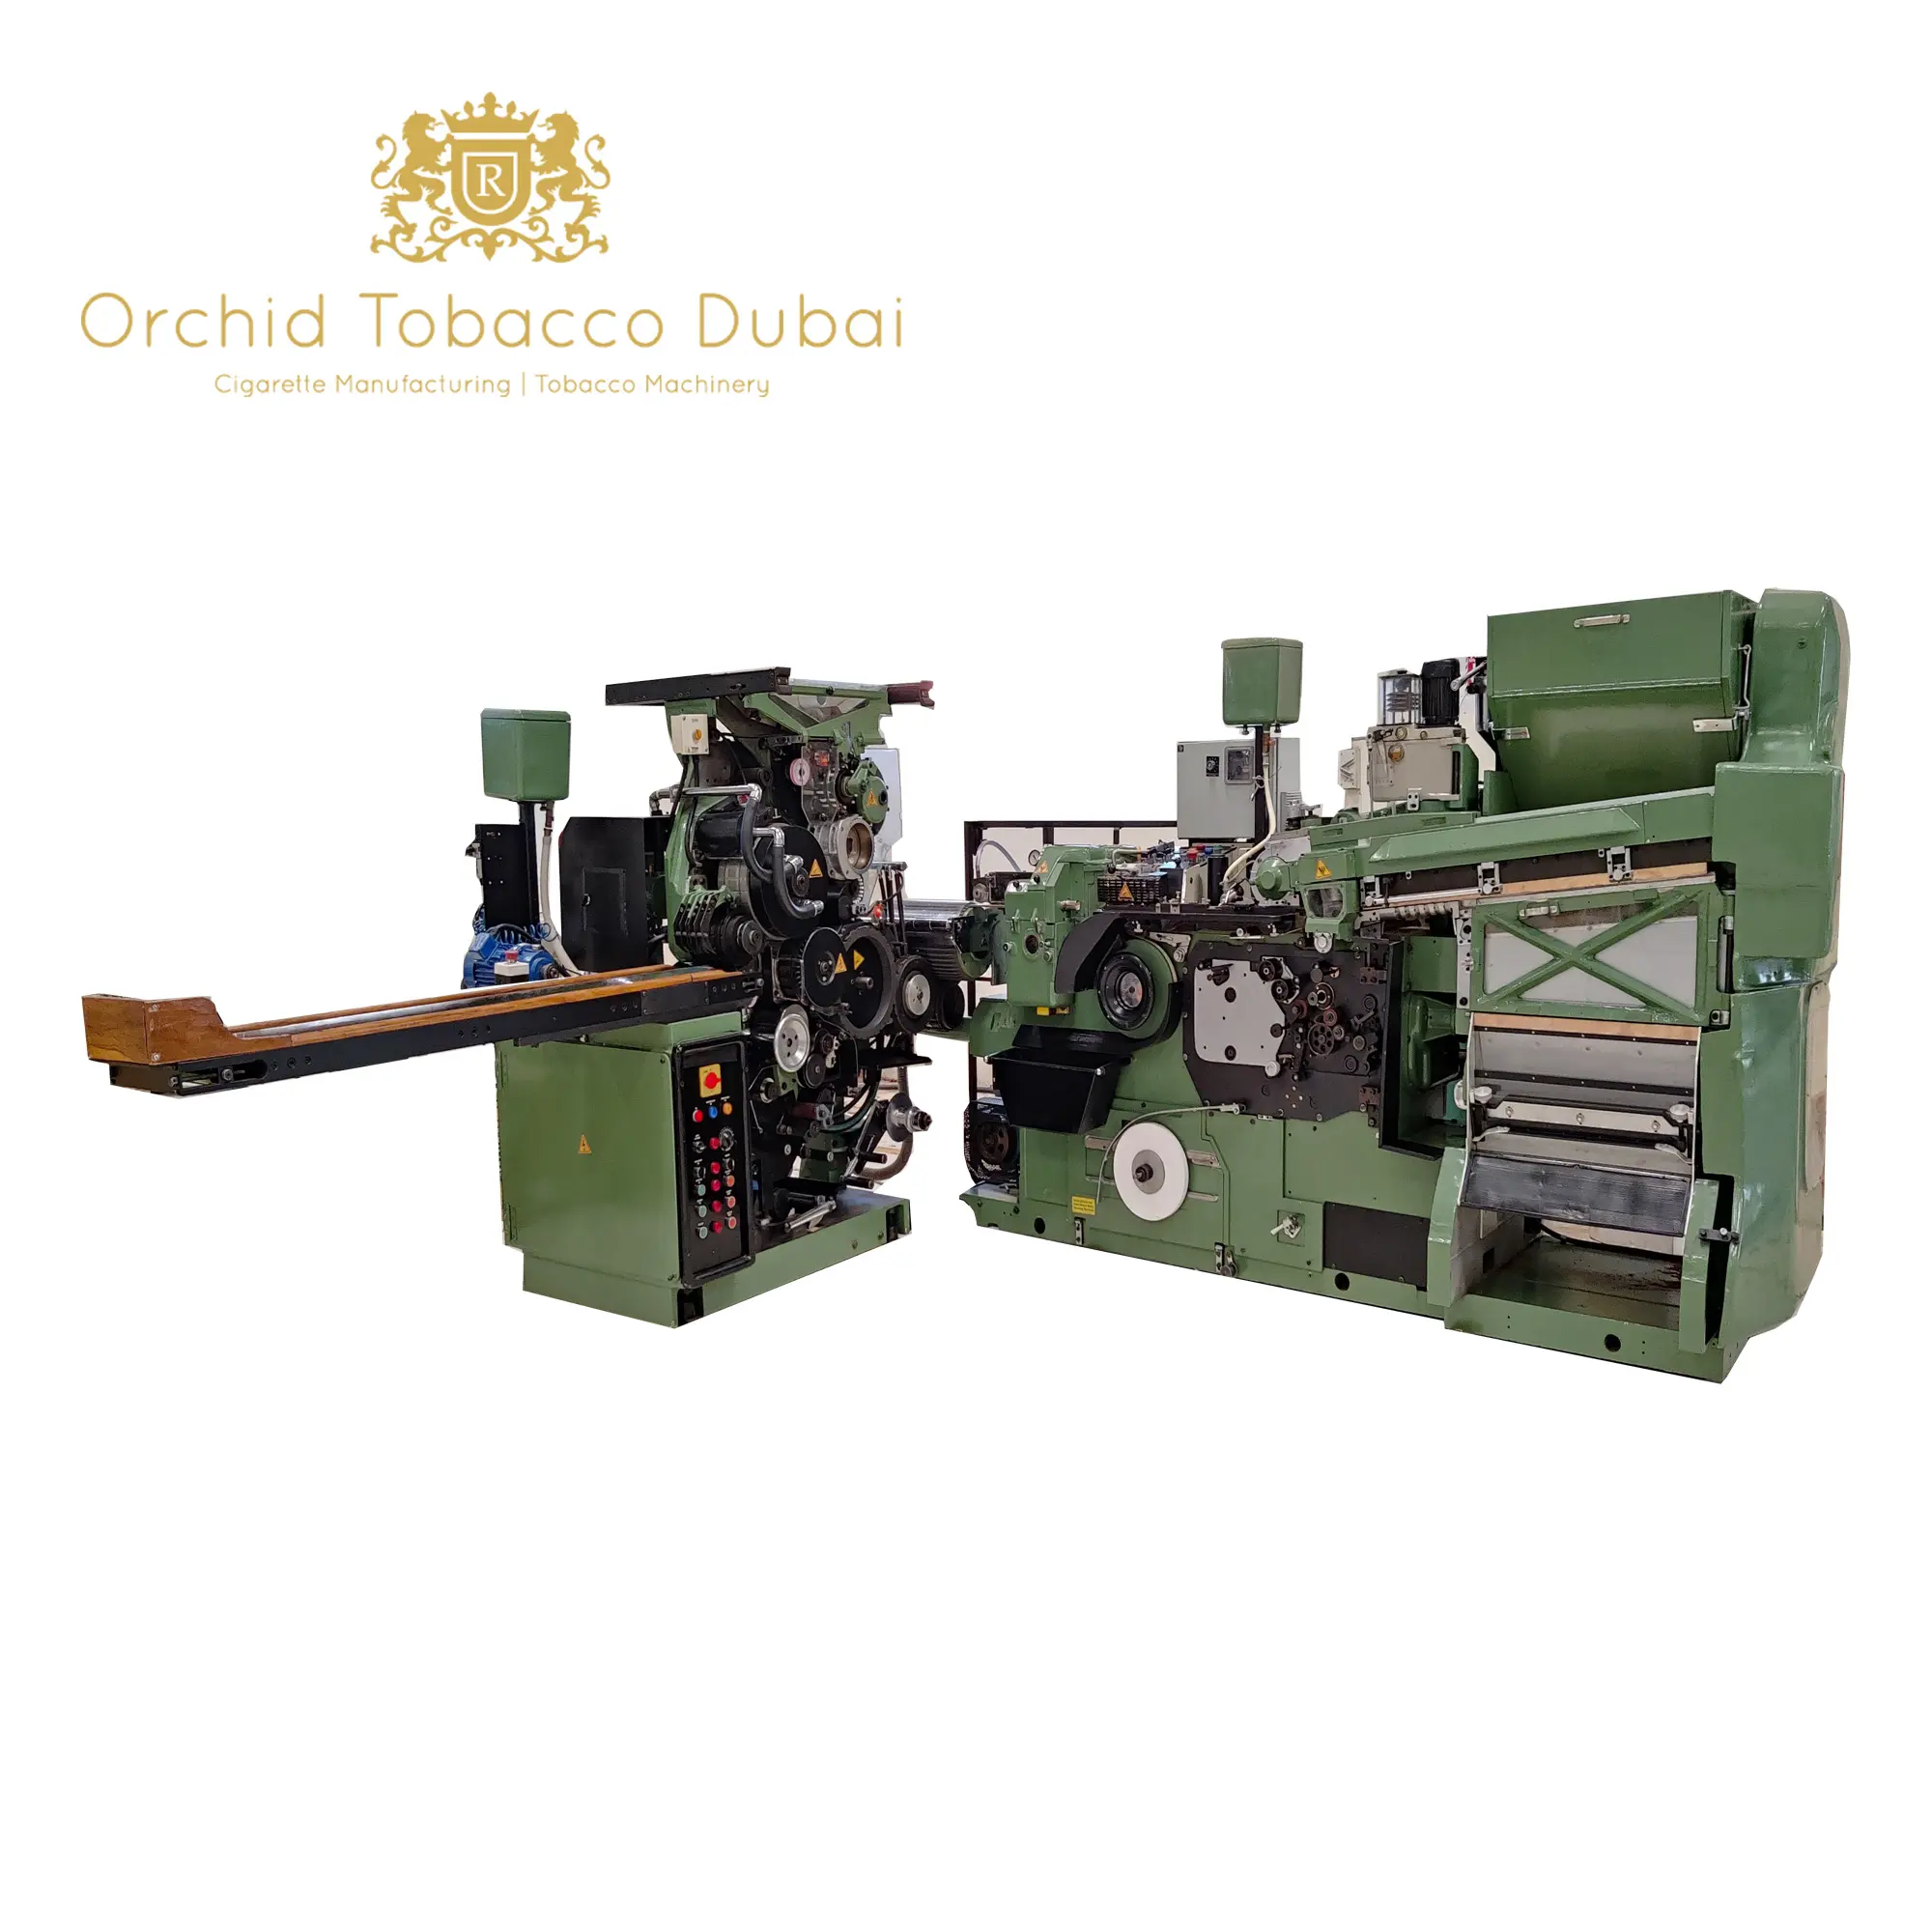 Filtros de cigarros que fazem máquina: melhora a qualidade do cigarro e padrões de segurança